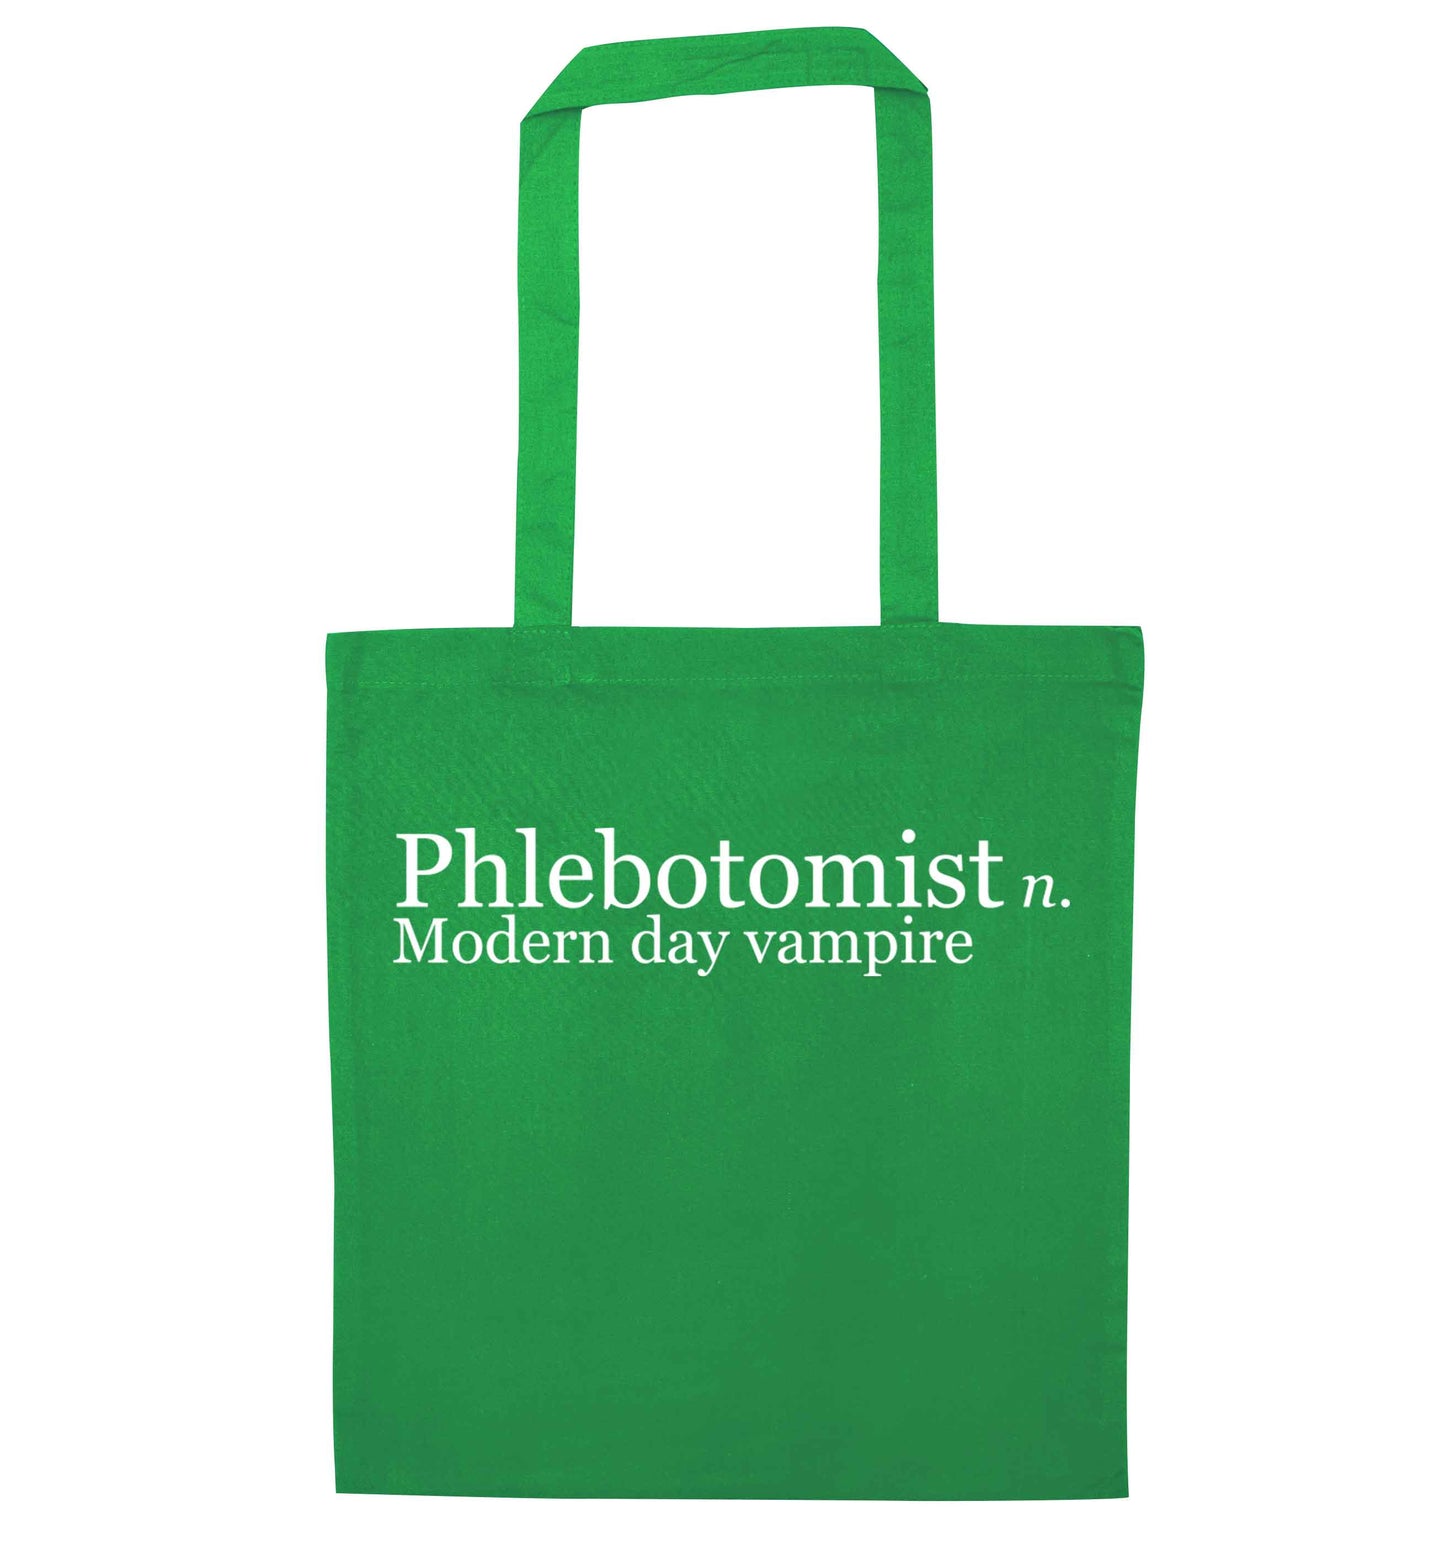 Phlebotomist - Modern day vampire green tote bag